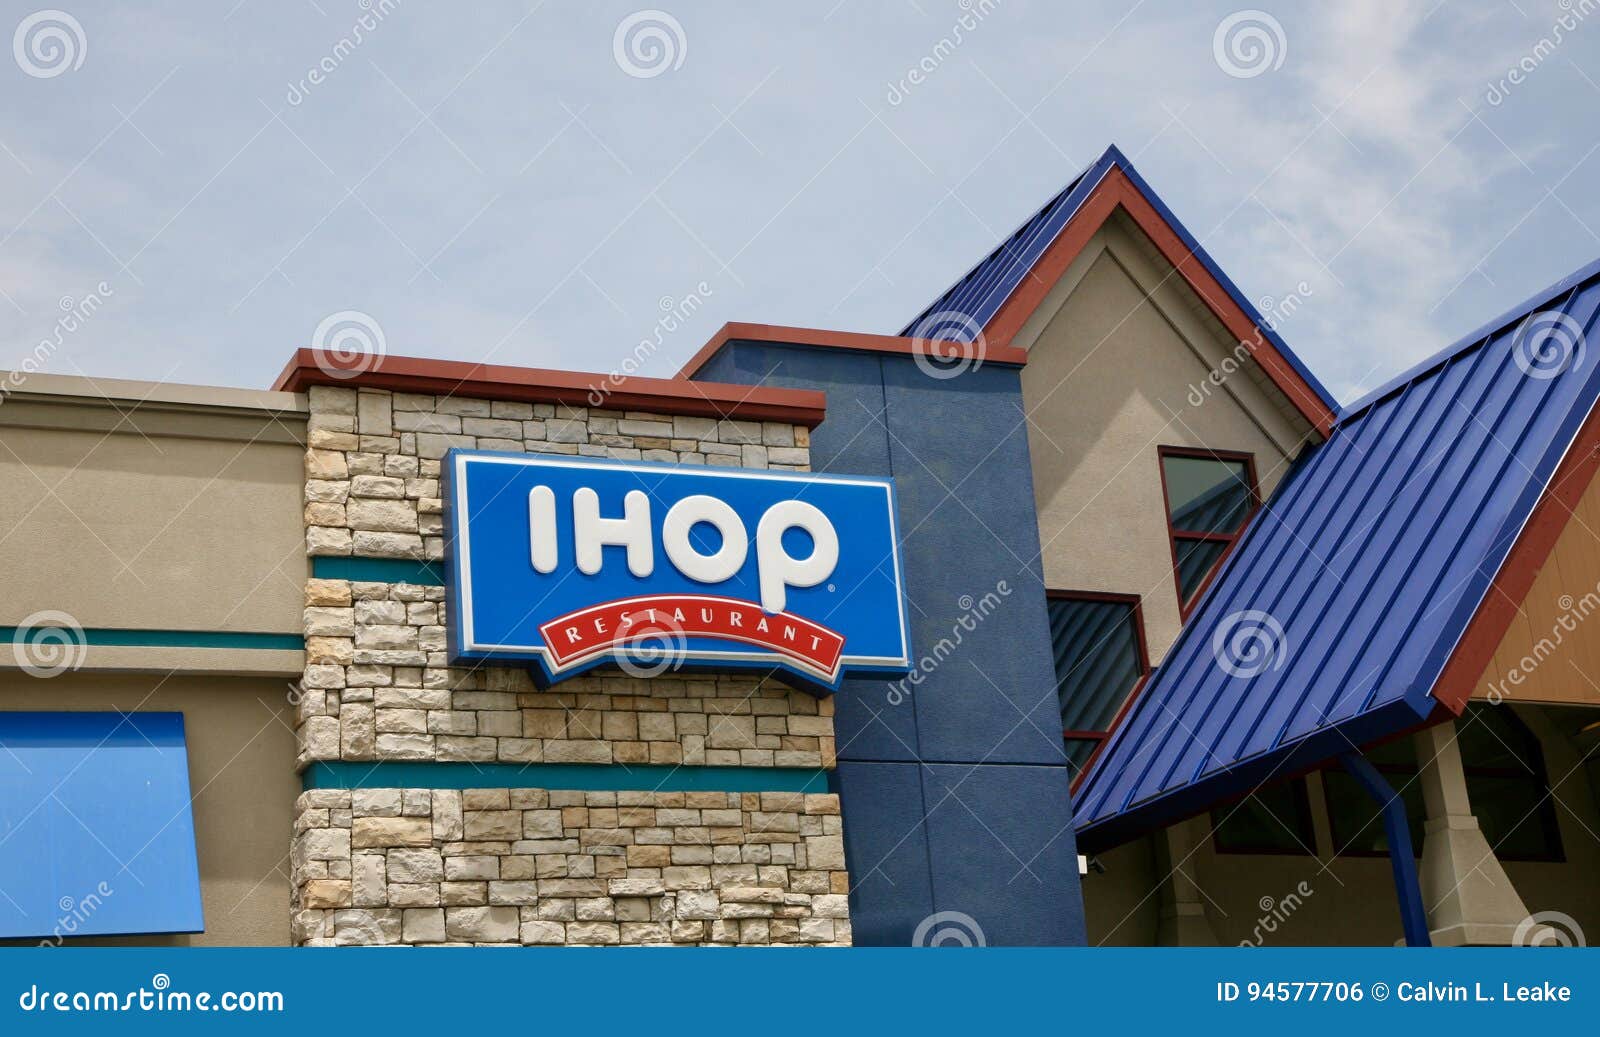 Ihop Restaurant Neon Sign Stock Photo - Download Image Now - IHOP,  Restaurant, Building Exterior - iStock